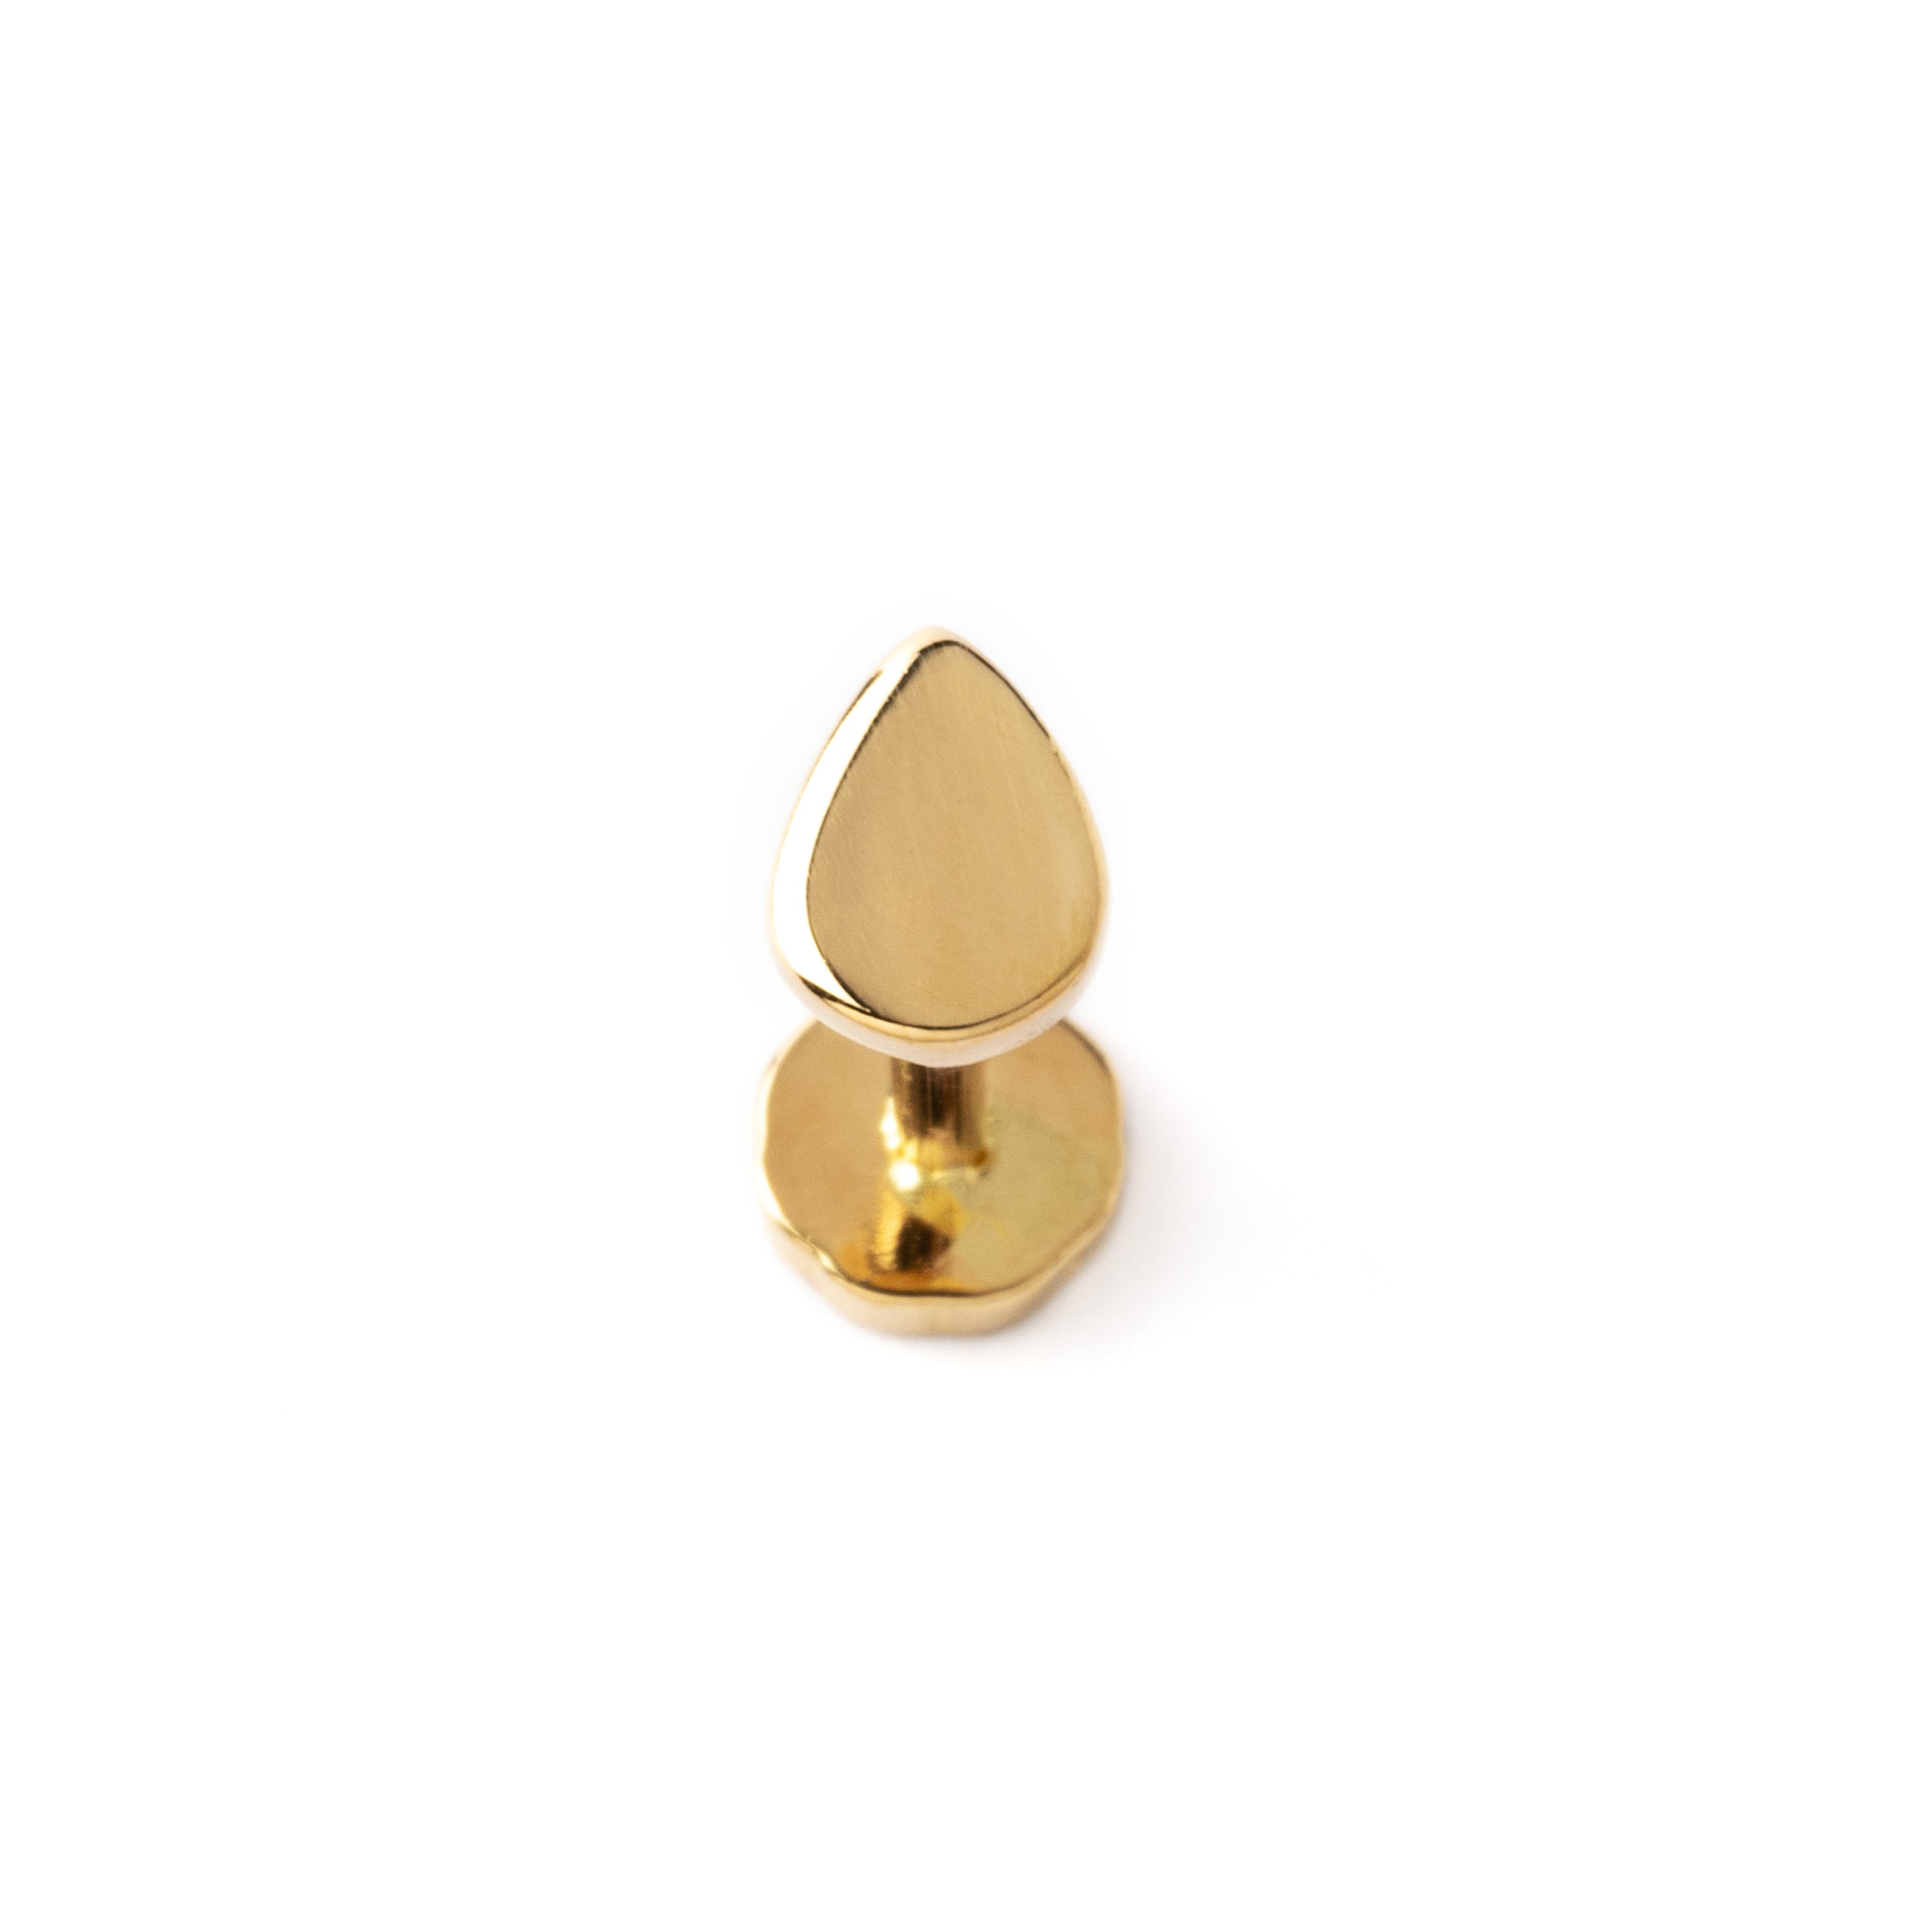 14k Gold internally threaded screw back earring 1.2mm (16g), 8mm, teardrop labret stud frontal view